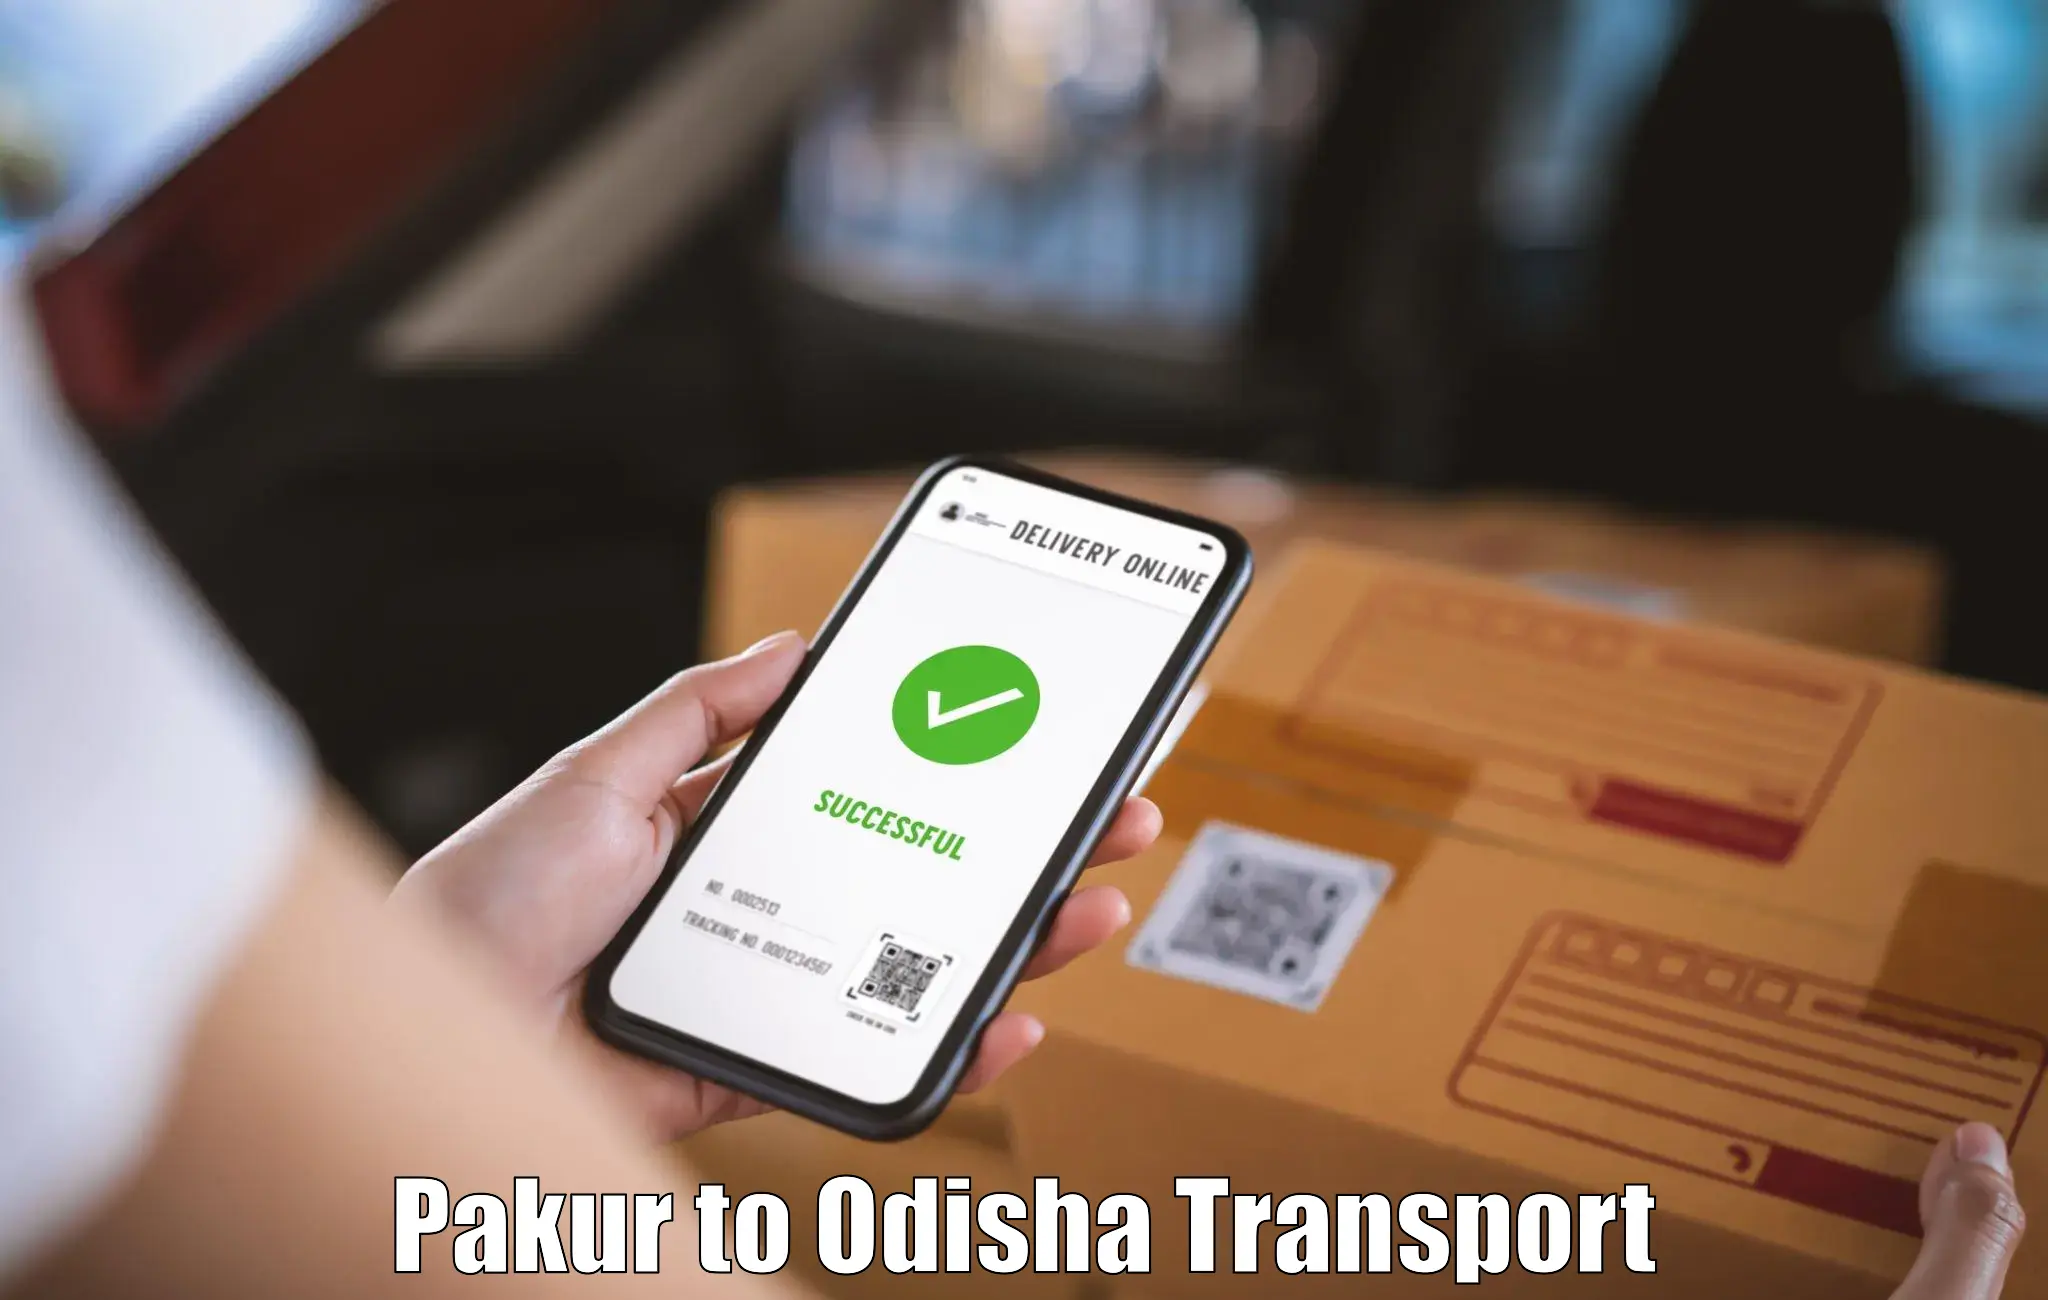 Daily transport service Pakur to Balliguda